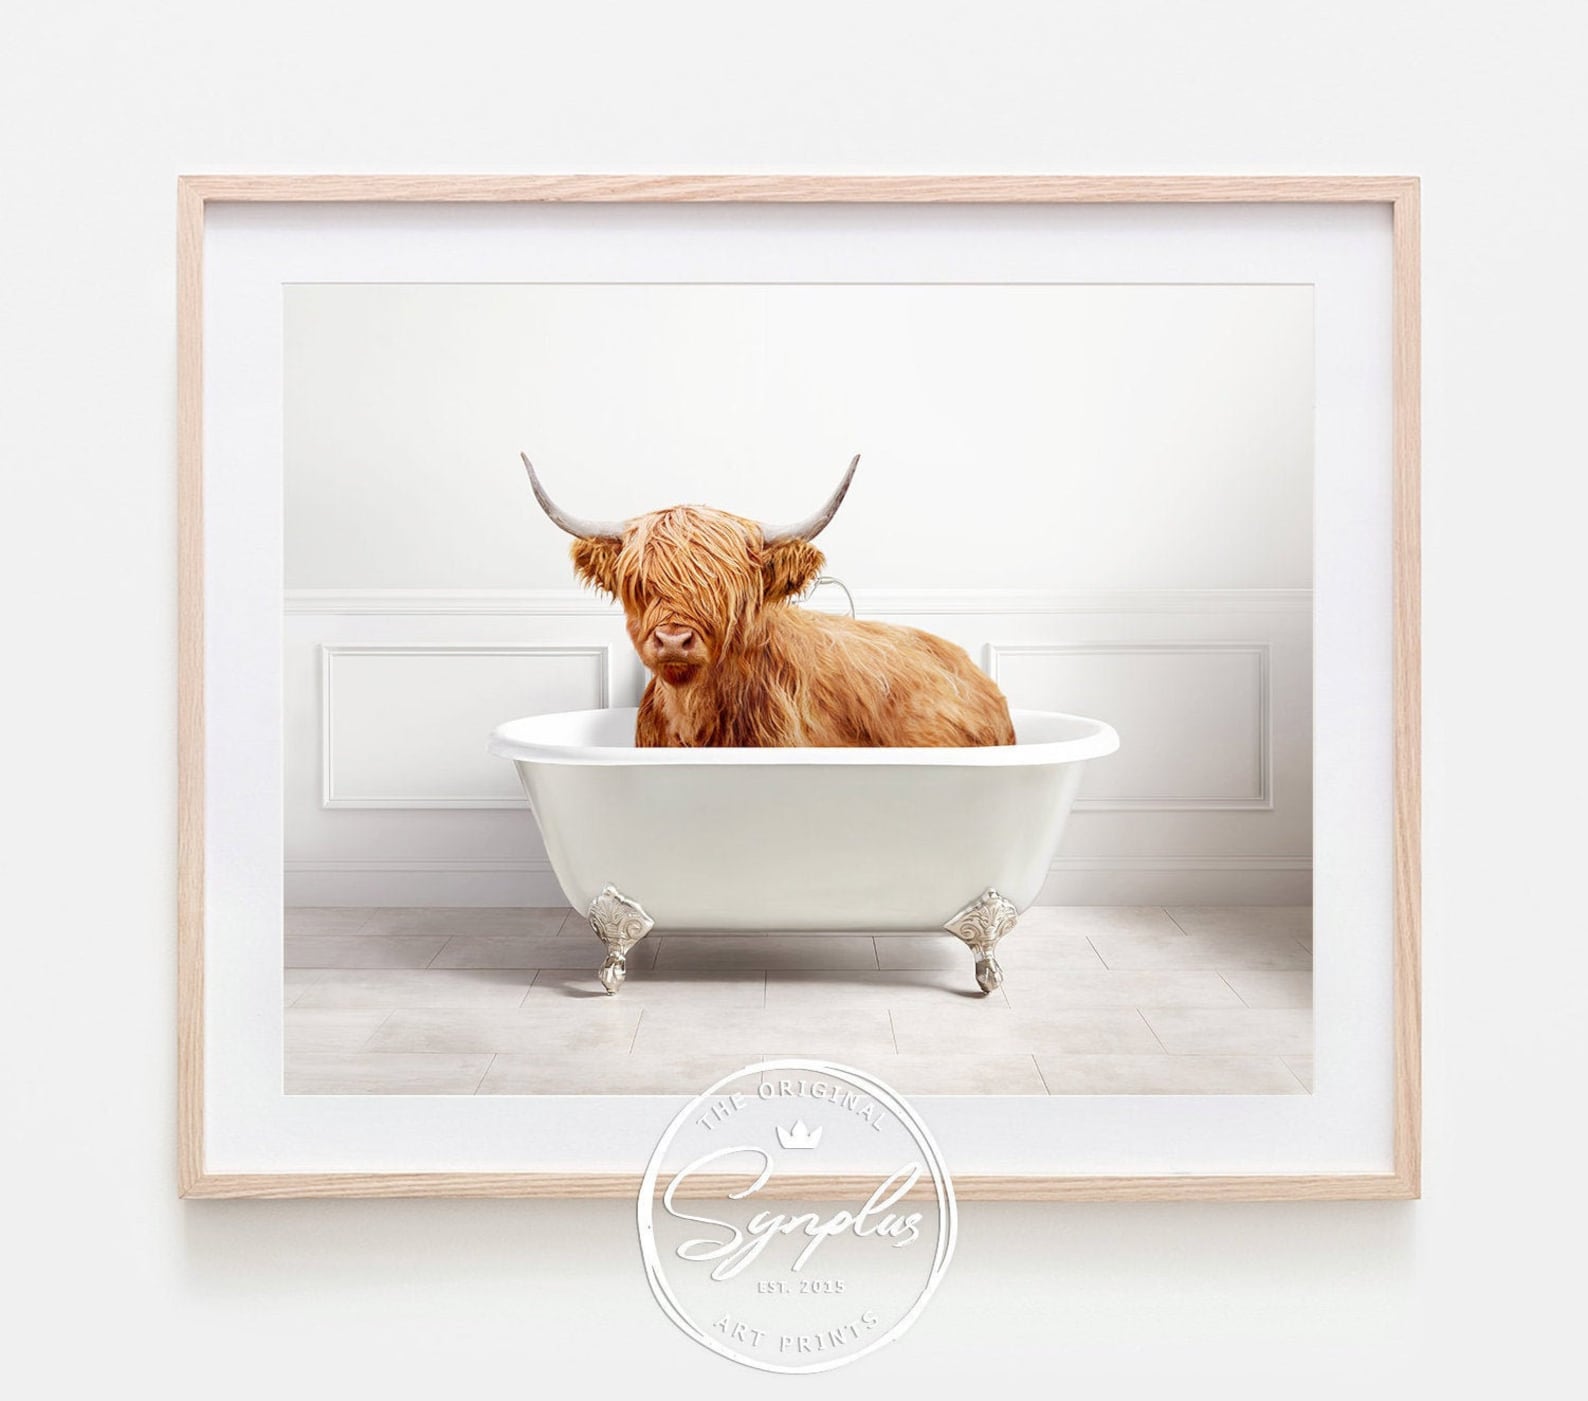 Highland Cow in a Bathtub Print Cow Taking a Bath Cow Etsy